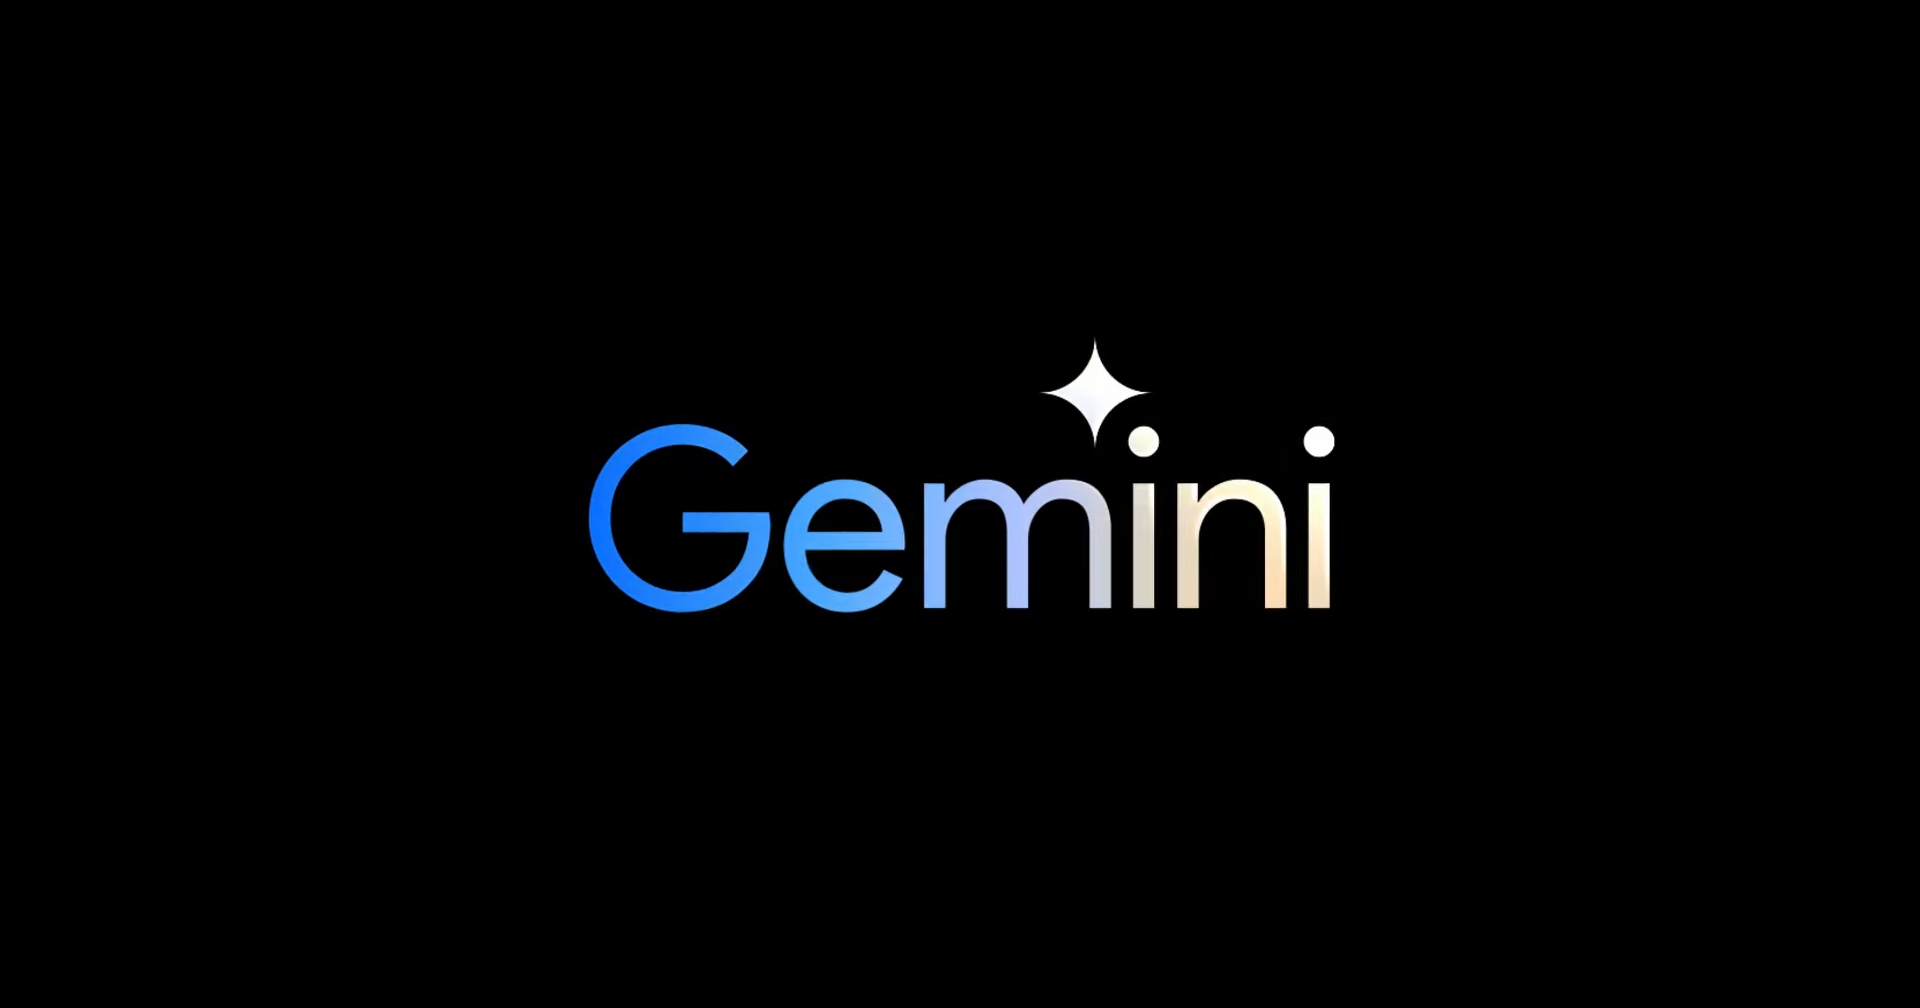 Google gemini 1.5. Гугл Гемини. Gemini ai. Gemini ai APK. Gemini Google нигеры.